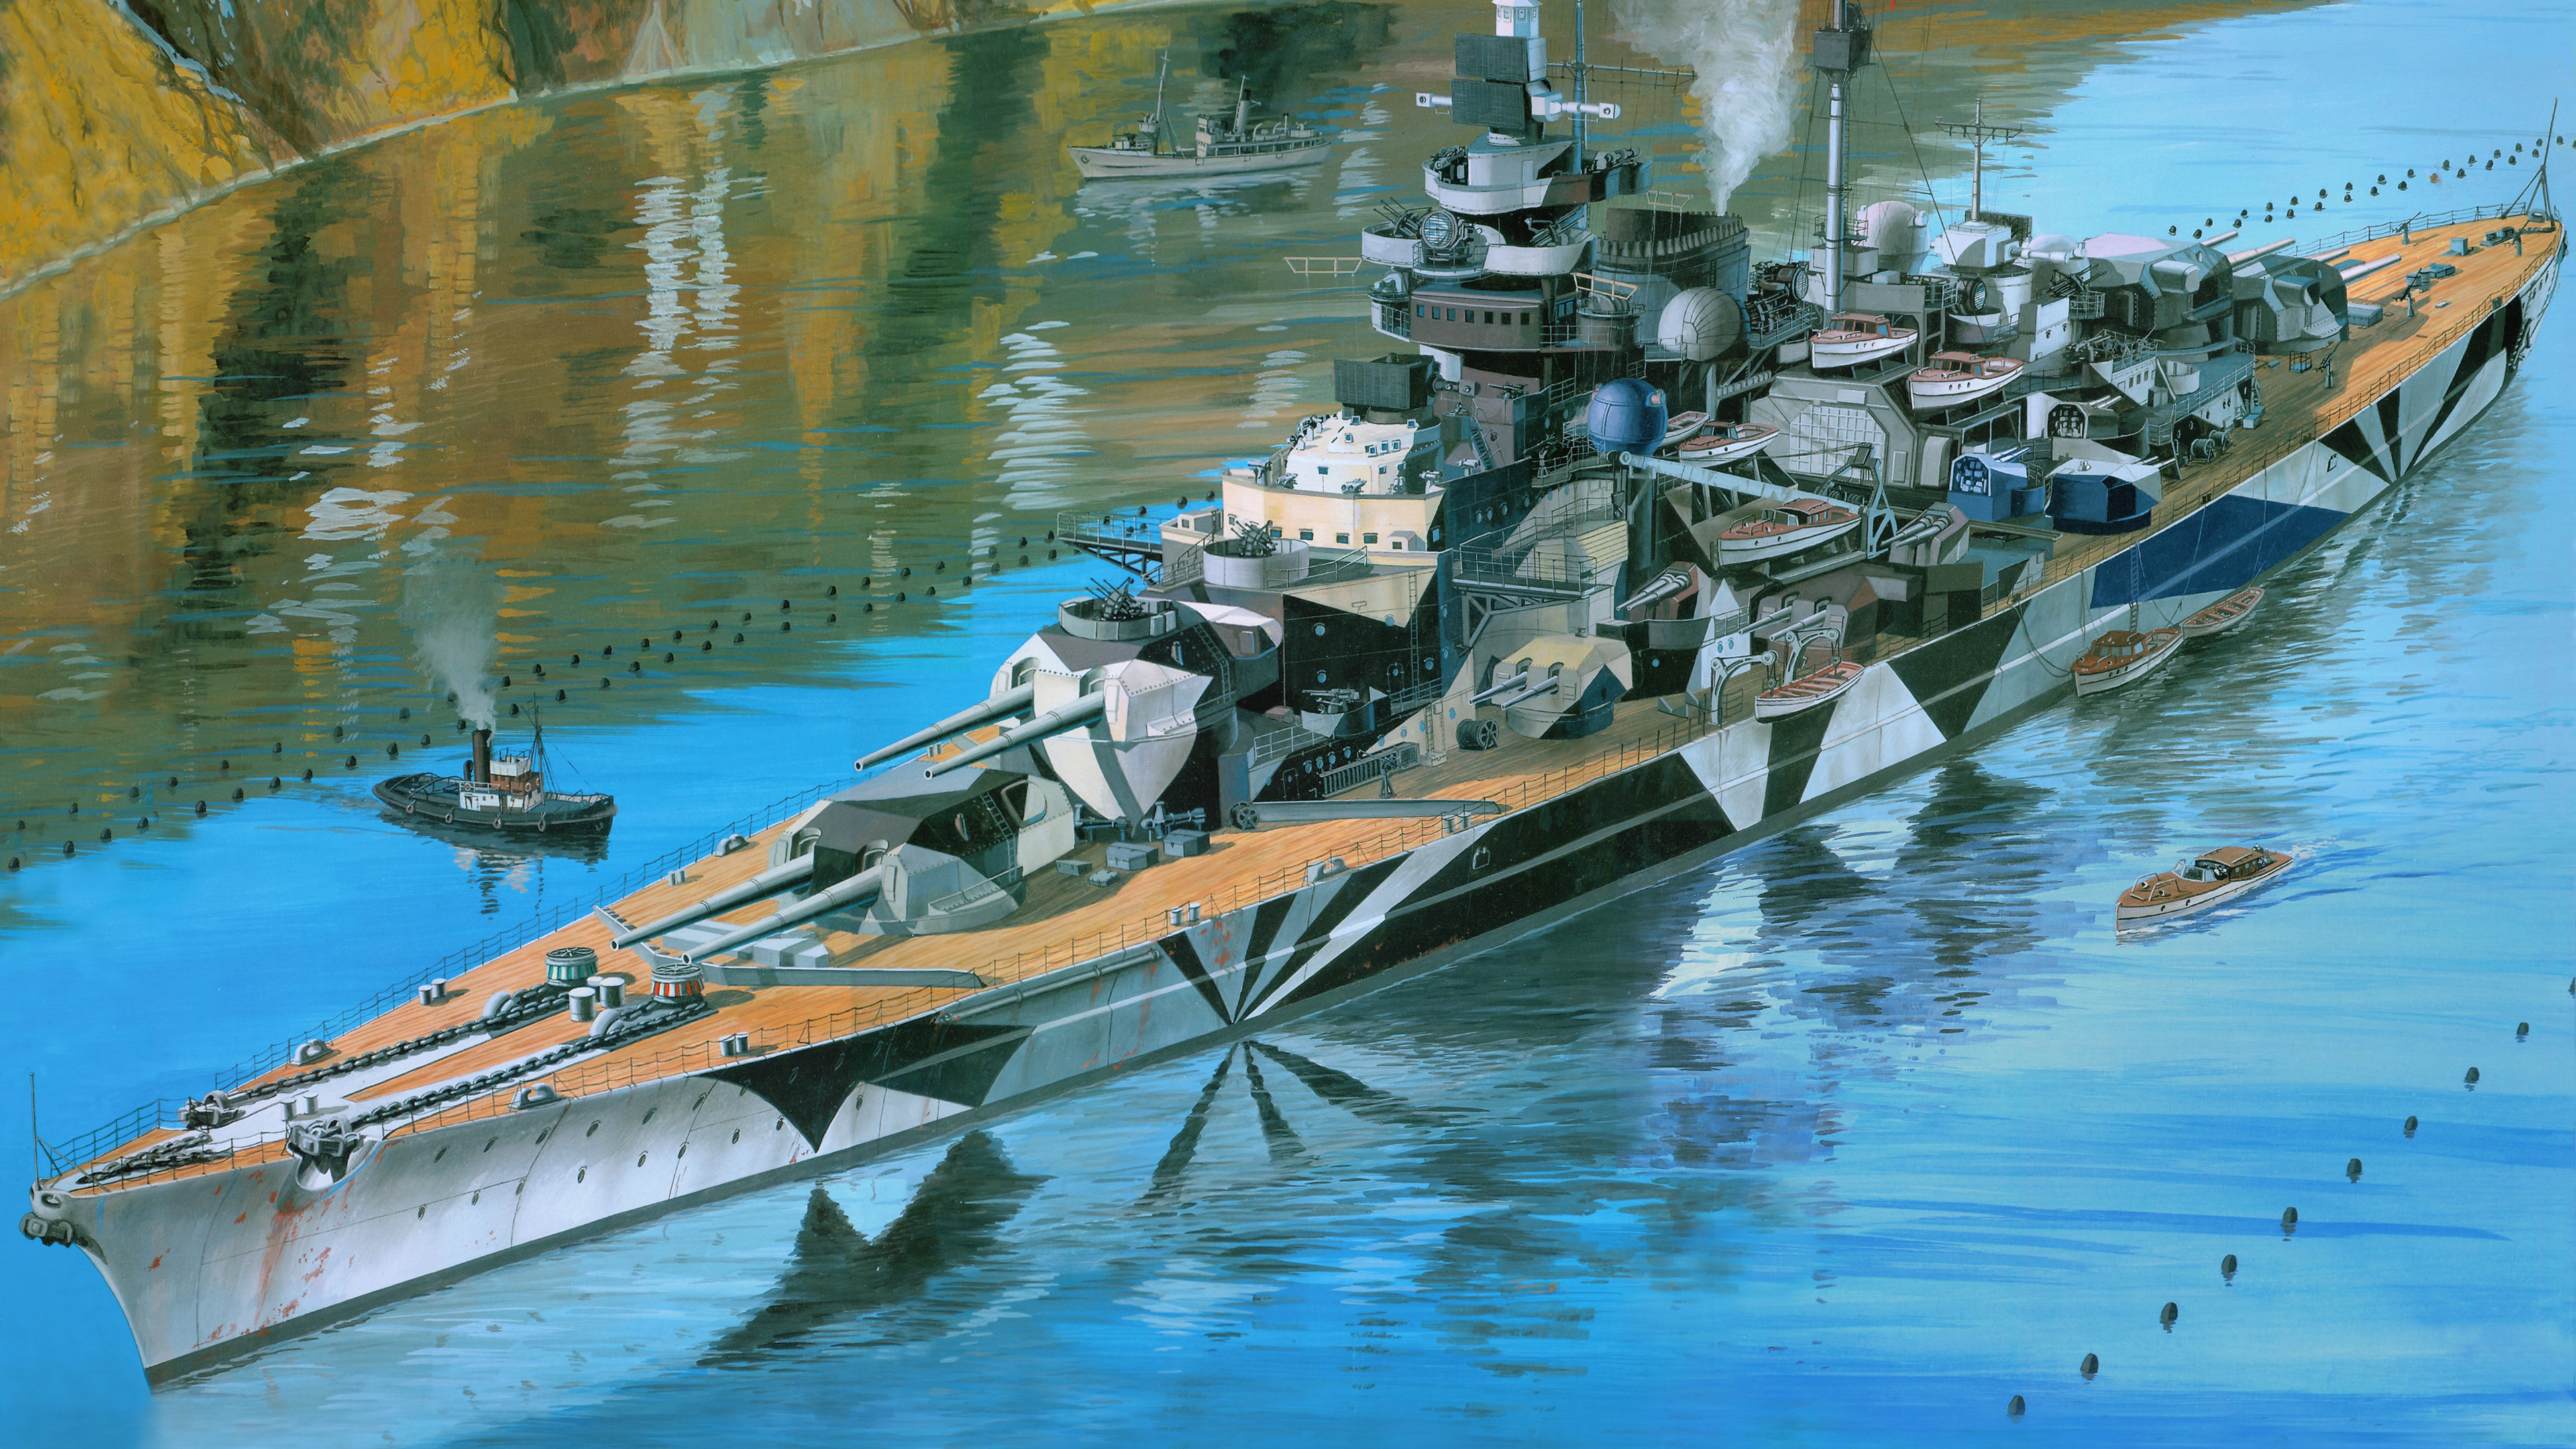 Acorazado Alemán Tirpitz, Revell, el Modelo de Plástico, Acorazado Alemán Bismarck, Barco. Wallpaper in 3840x2160 Resolution